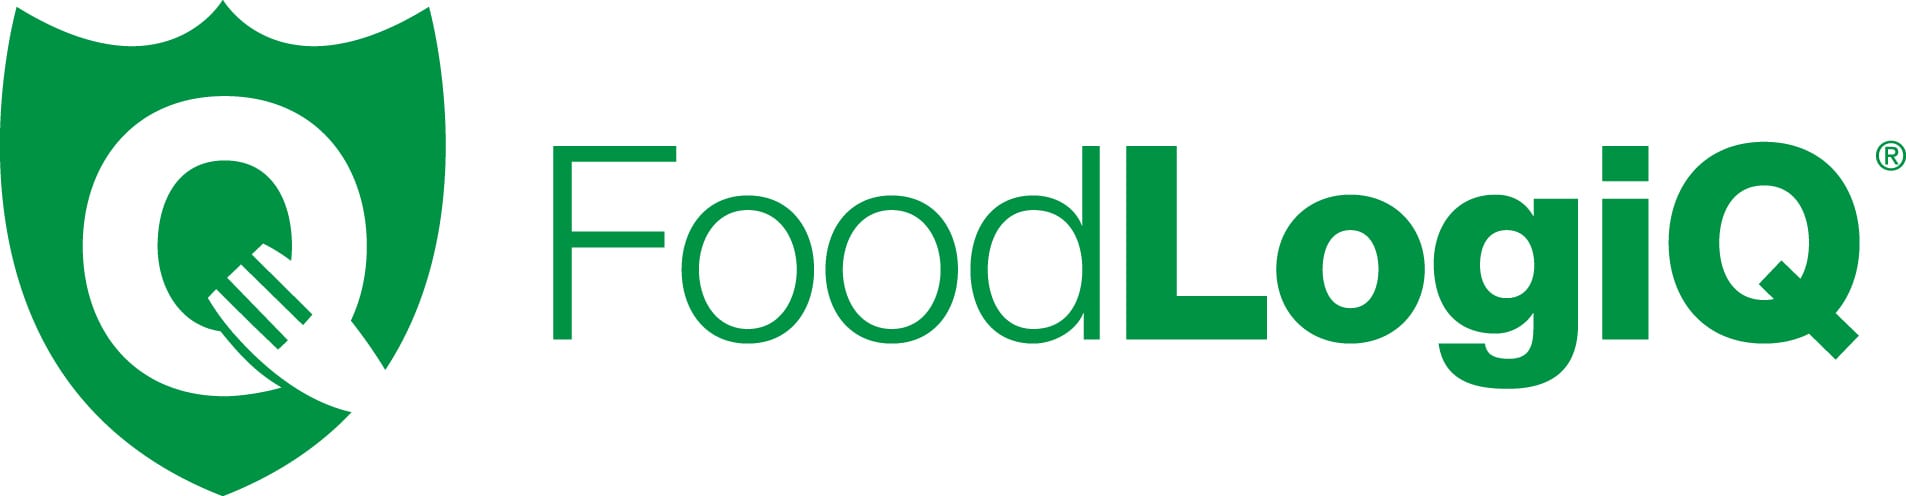 Logo, Green, Font, Text